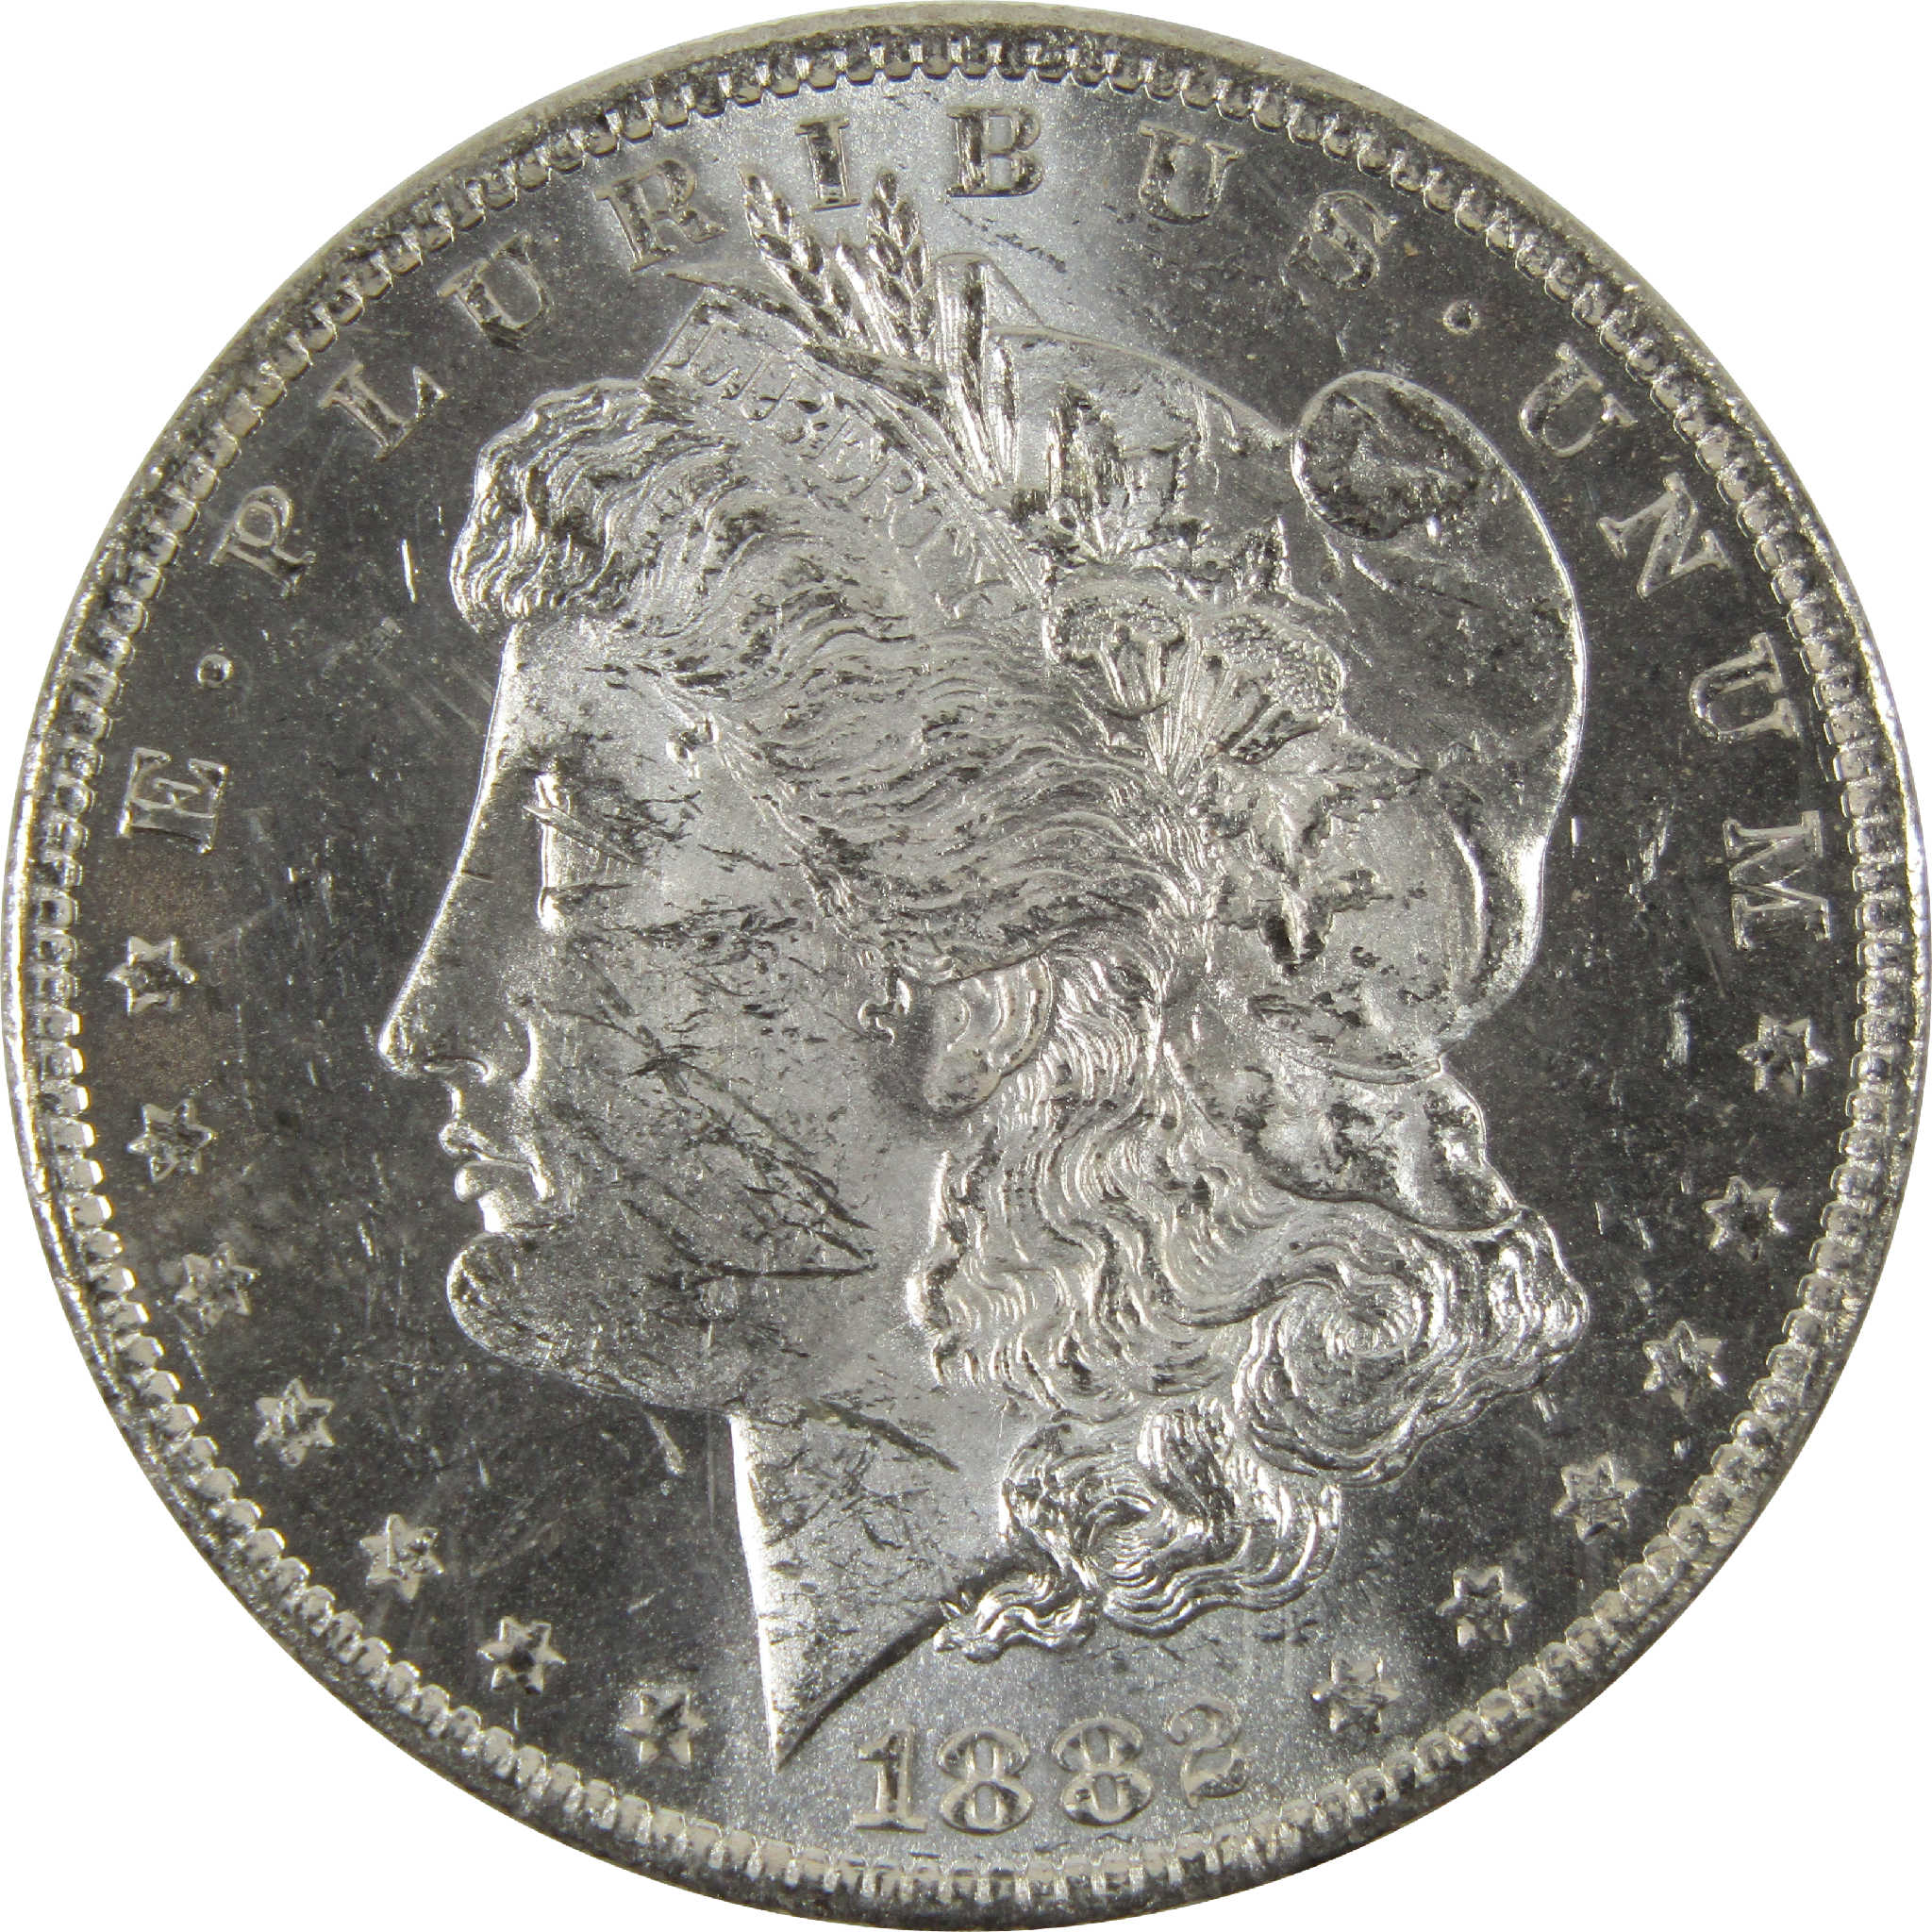 1882 O Morgan Dollar BU Uncirculated 90% Silver $1 Coin SKU:I8909 - Morgan coin - Morgan silver dollar - Morgan silver dollar for sale - Profile Coins &amp; Collectibles